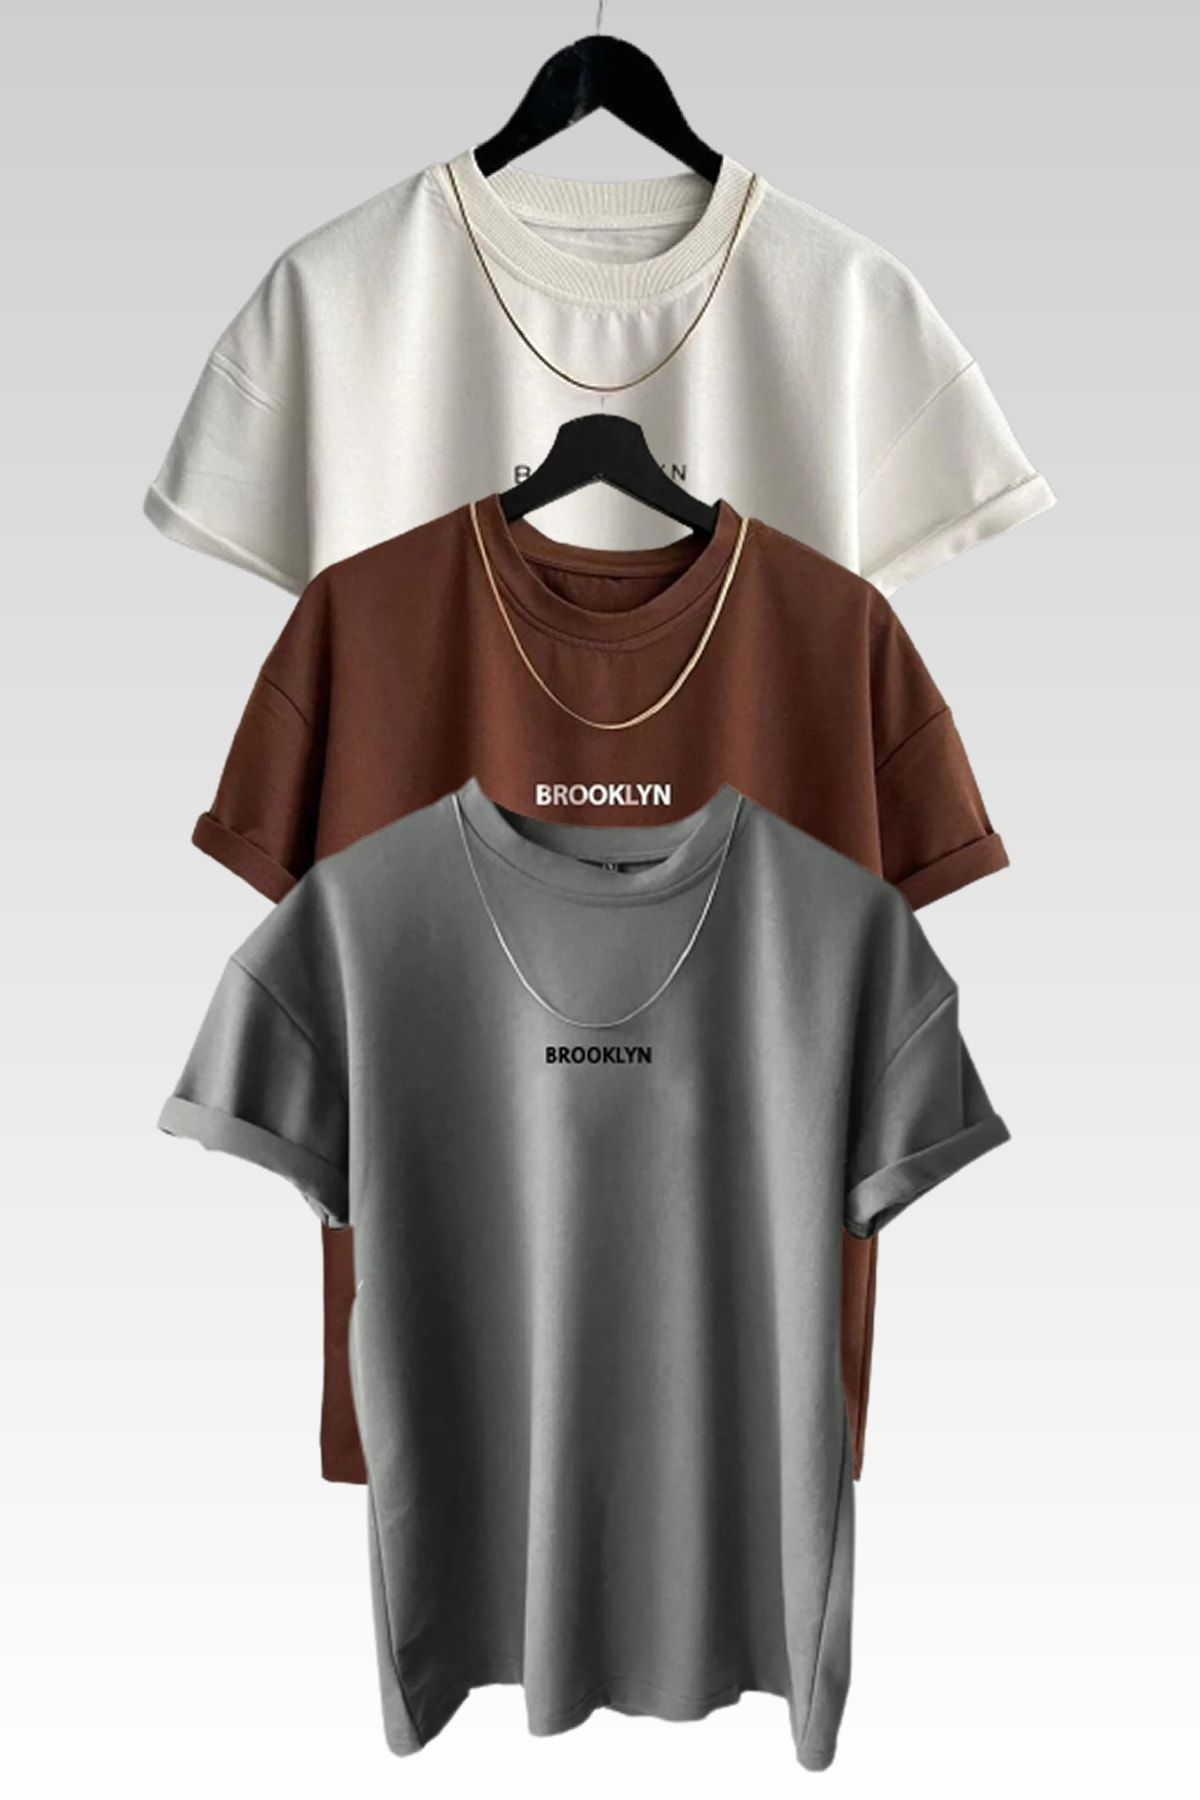 MODAGEN Unisex Brooklyn Baskılı 3lü Paket Kahve-gri-beyaz T-shirt